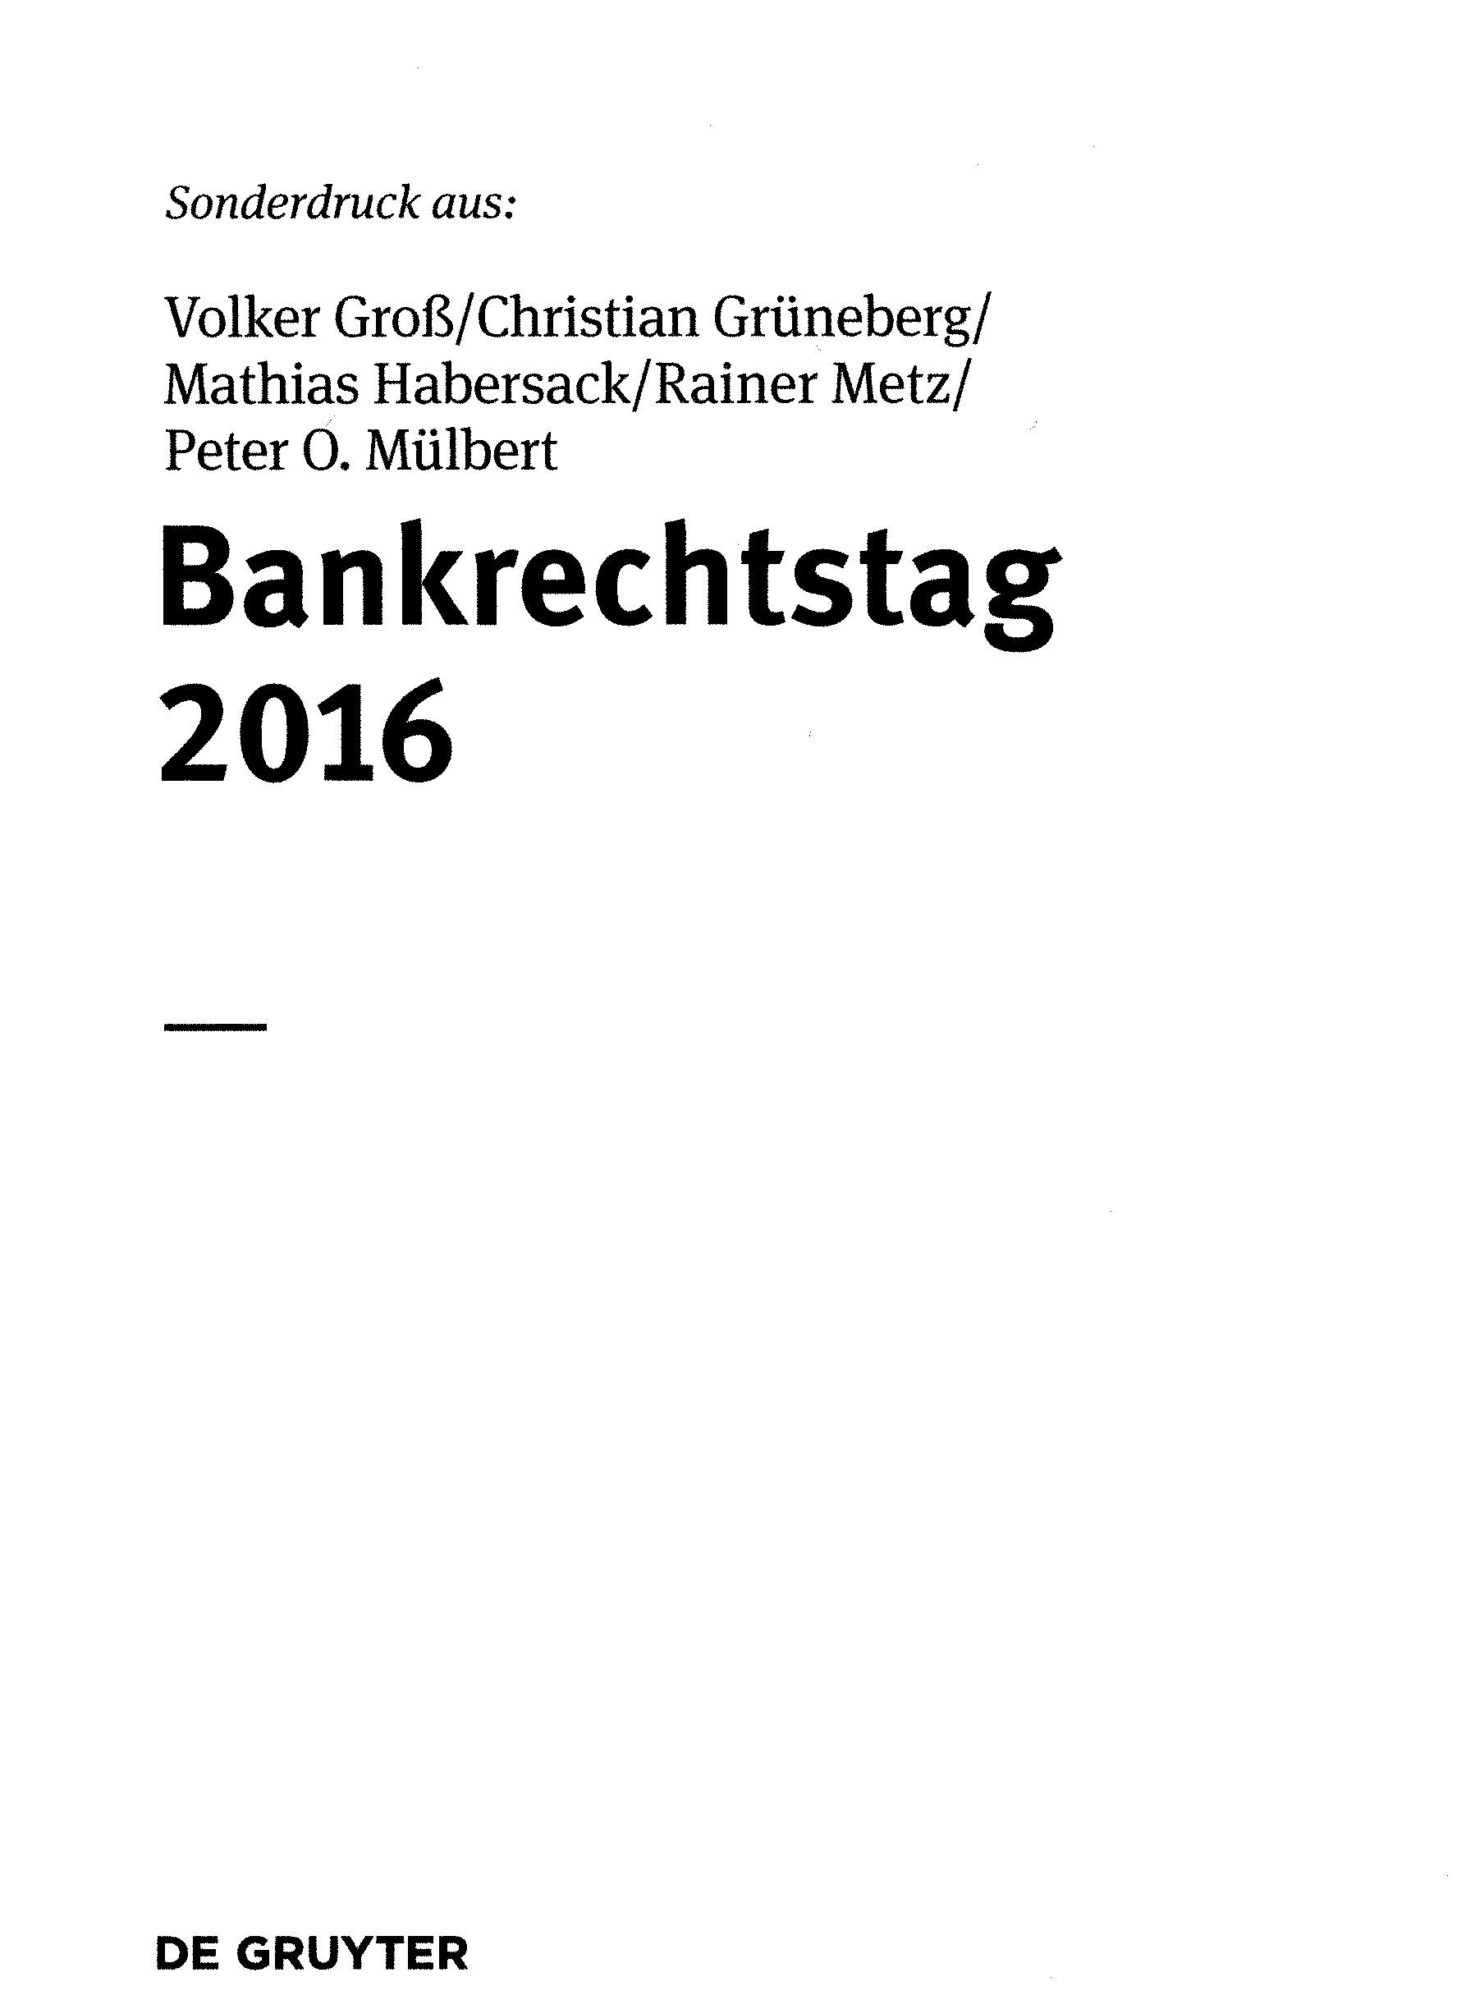 Zum Artikel "Vortrag auf dem Bankrechtstag 2016"